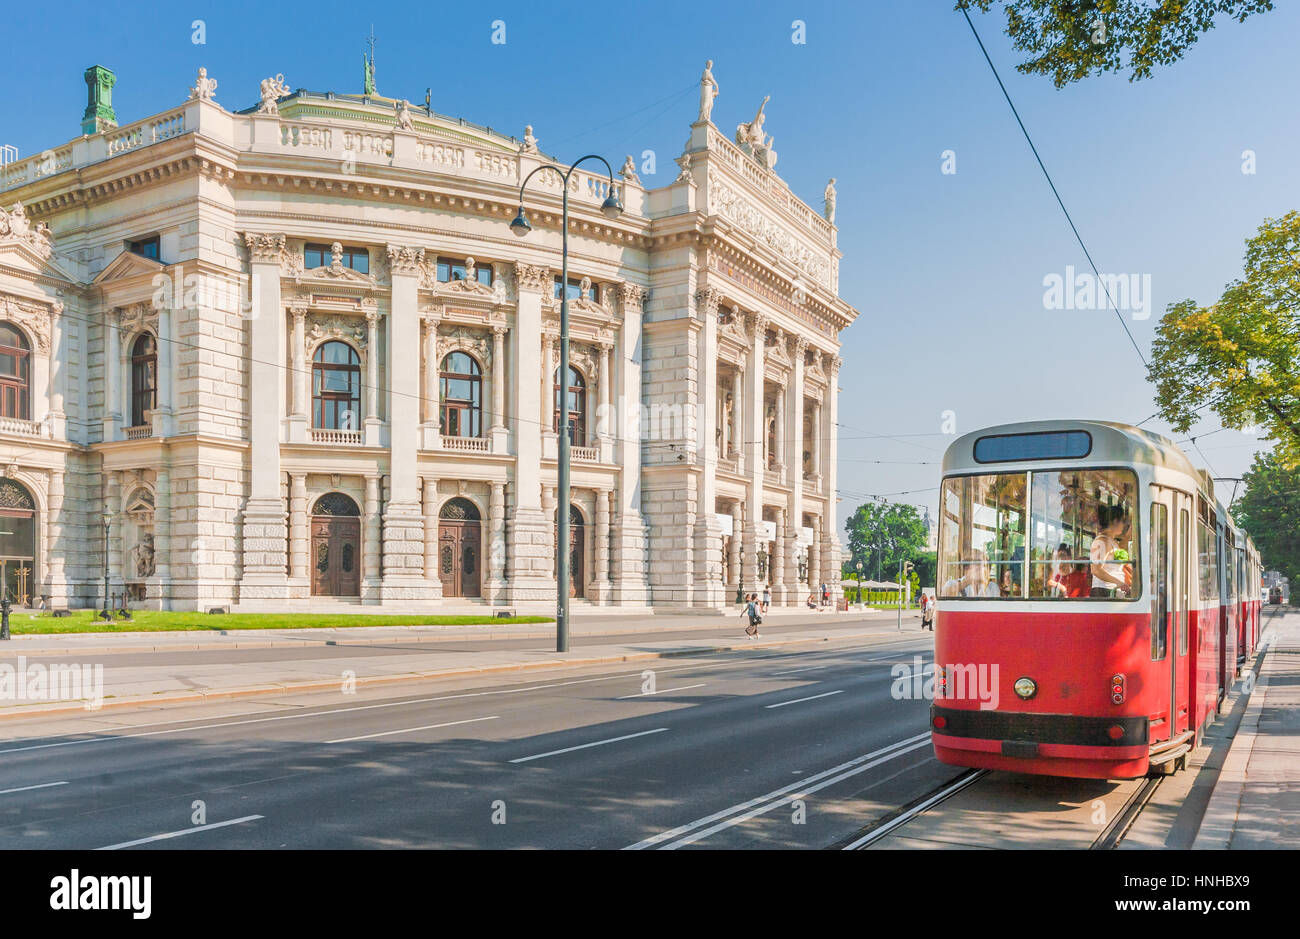 Visualizzazione classica del celebre Wiener Ringstrasse con Burgtheater storico (Imperial Court Theatre) e tradizionale rosso tram elettrico, Vienna, Austria Foto Stock